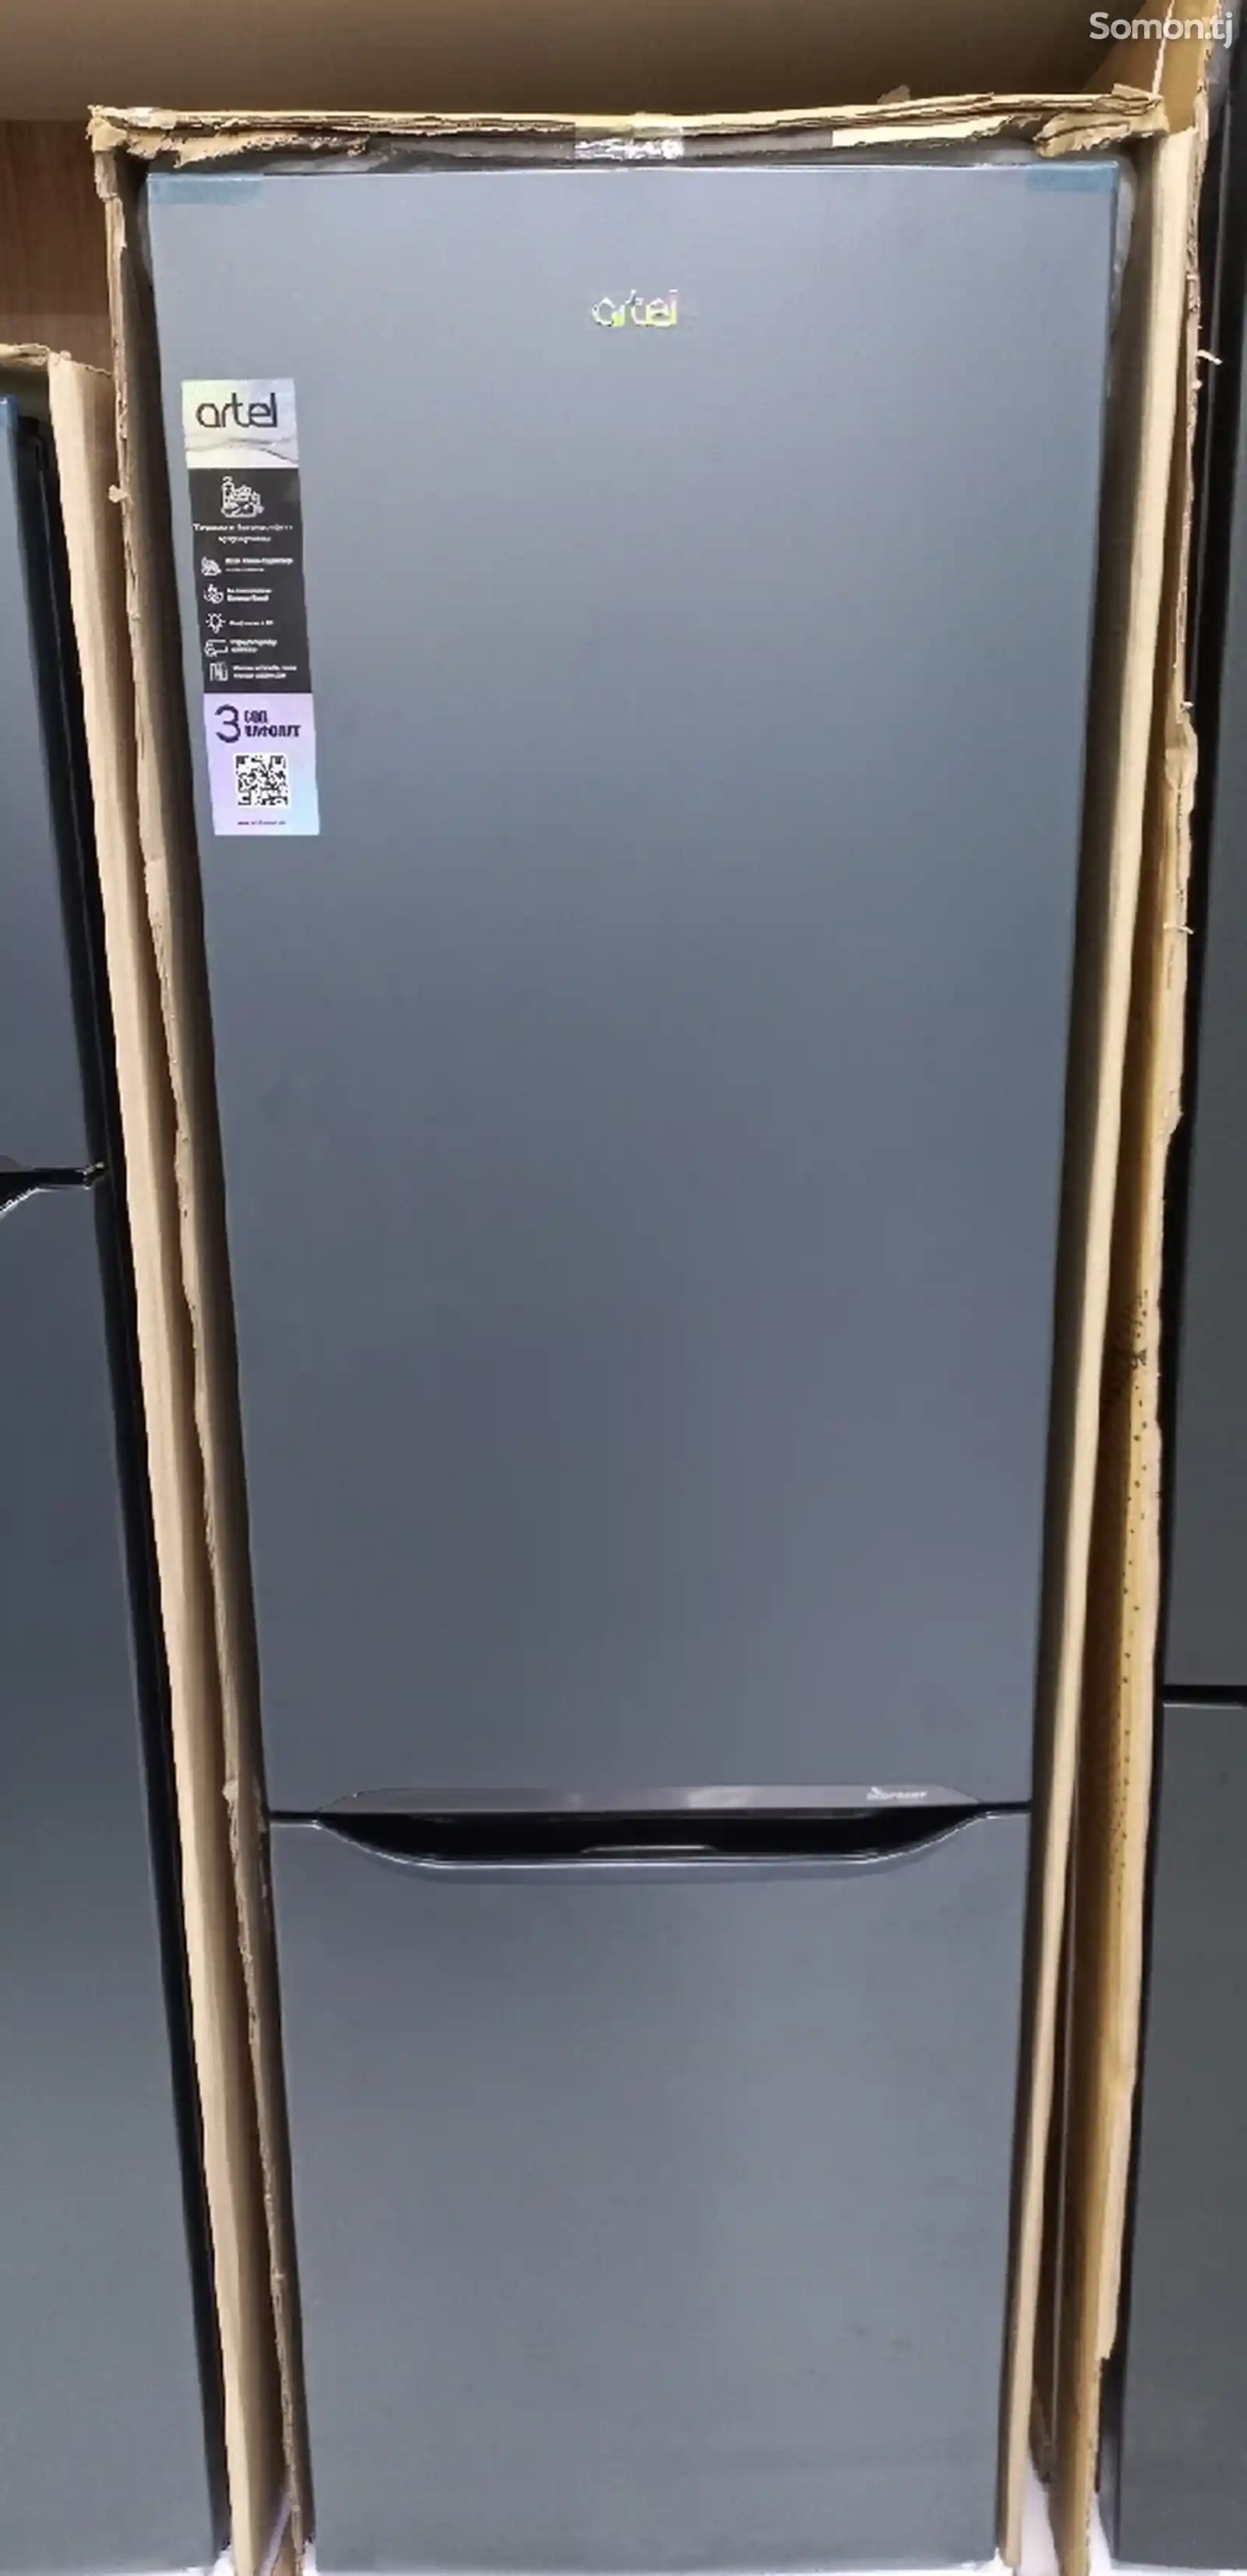 Холодильник Artel HD 345-1